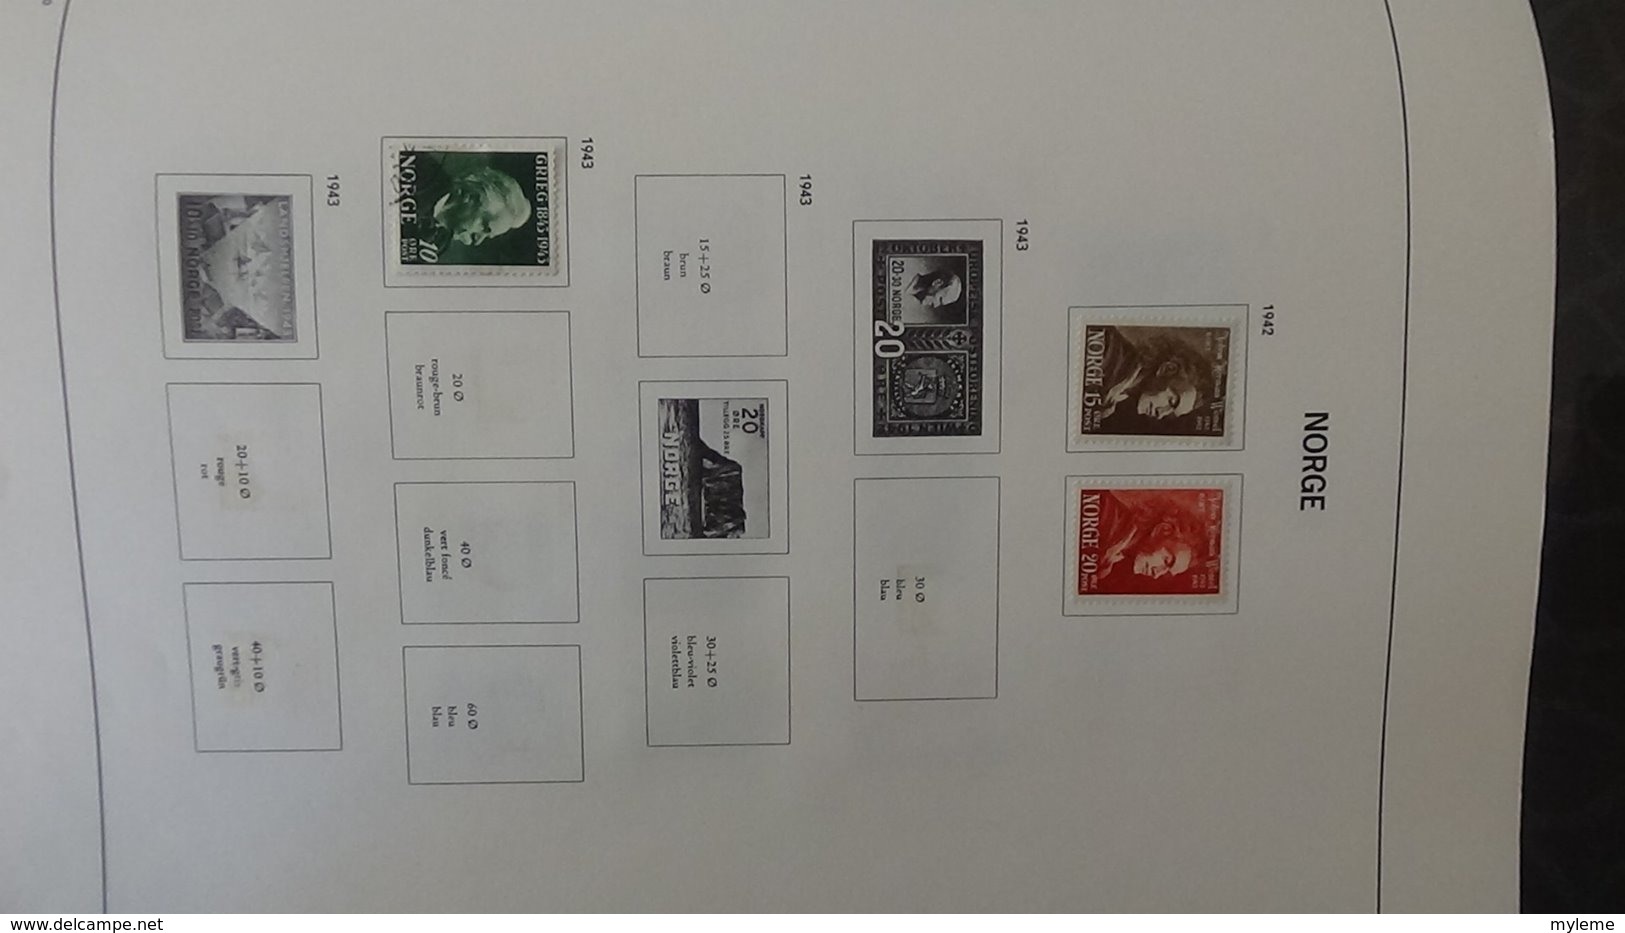 Collection timbres de NORVEGE  Idéal pour thématiques A saisir !!!